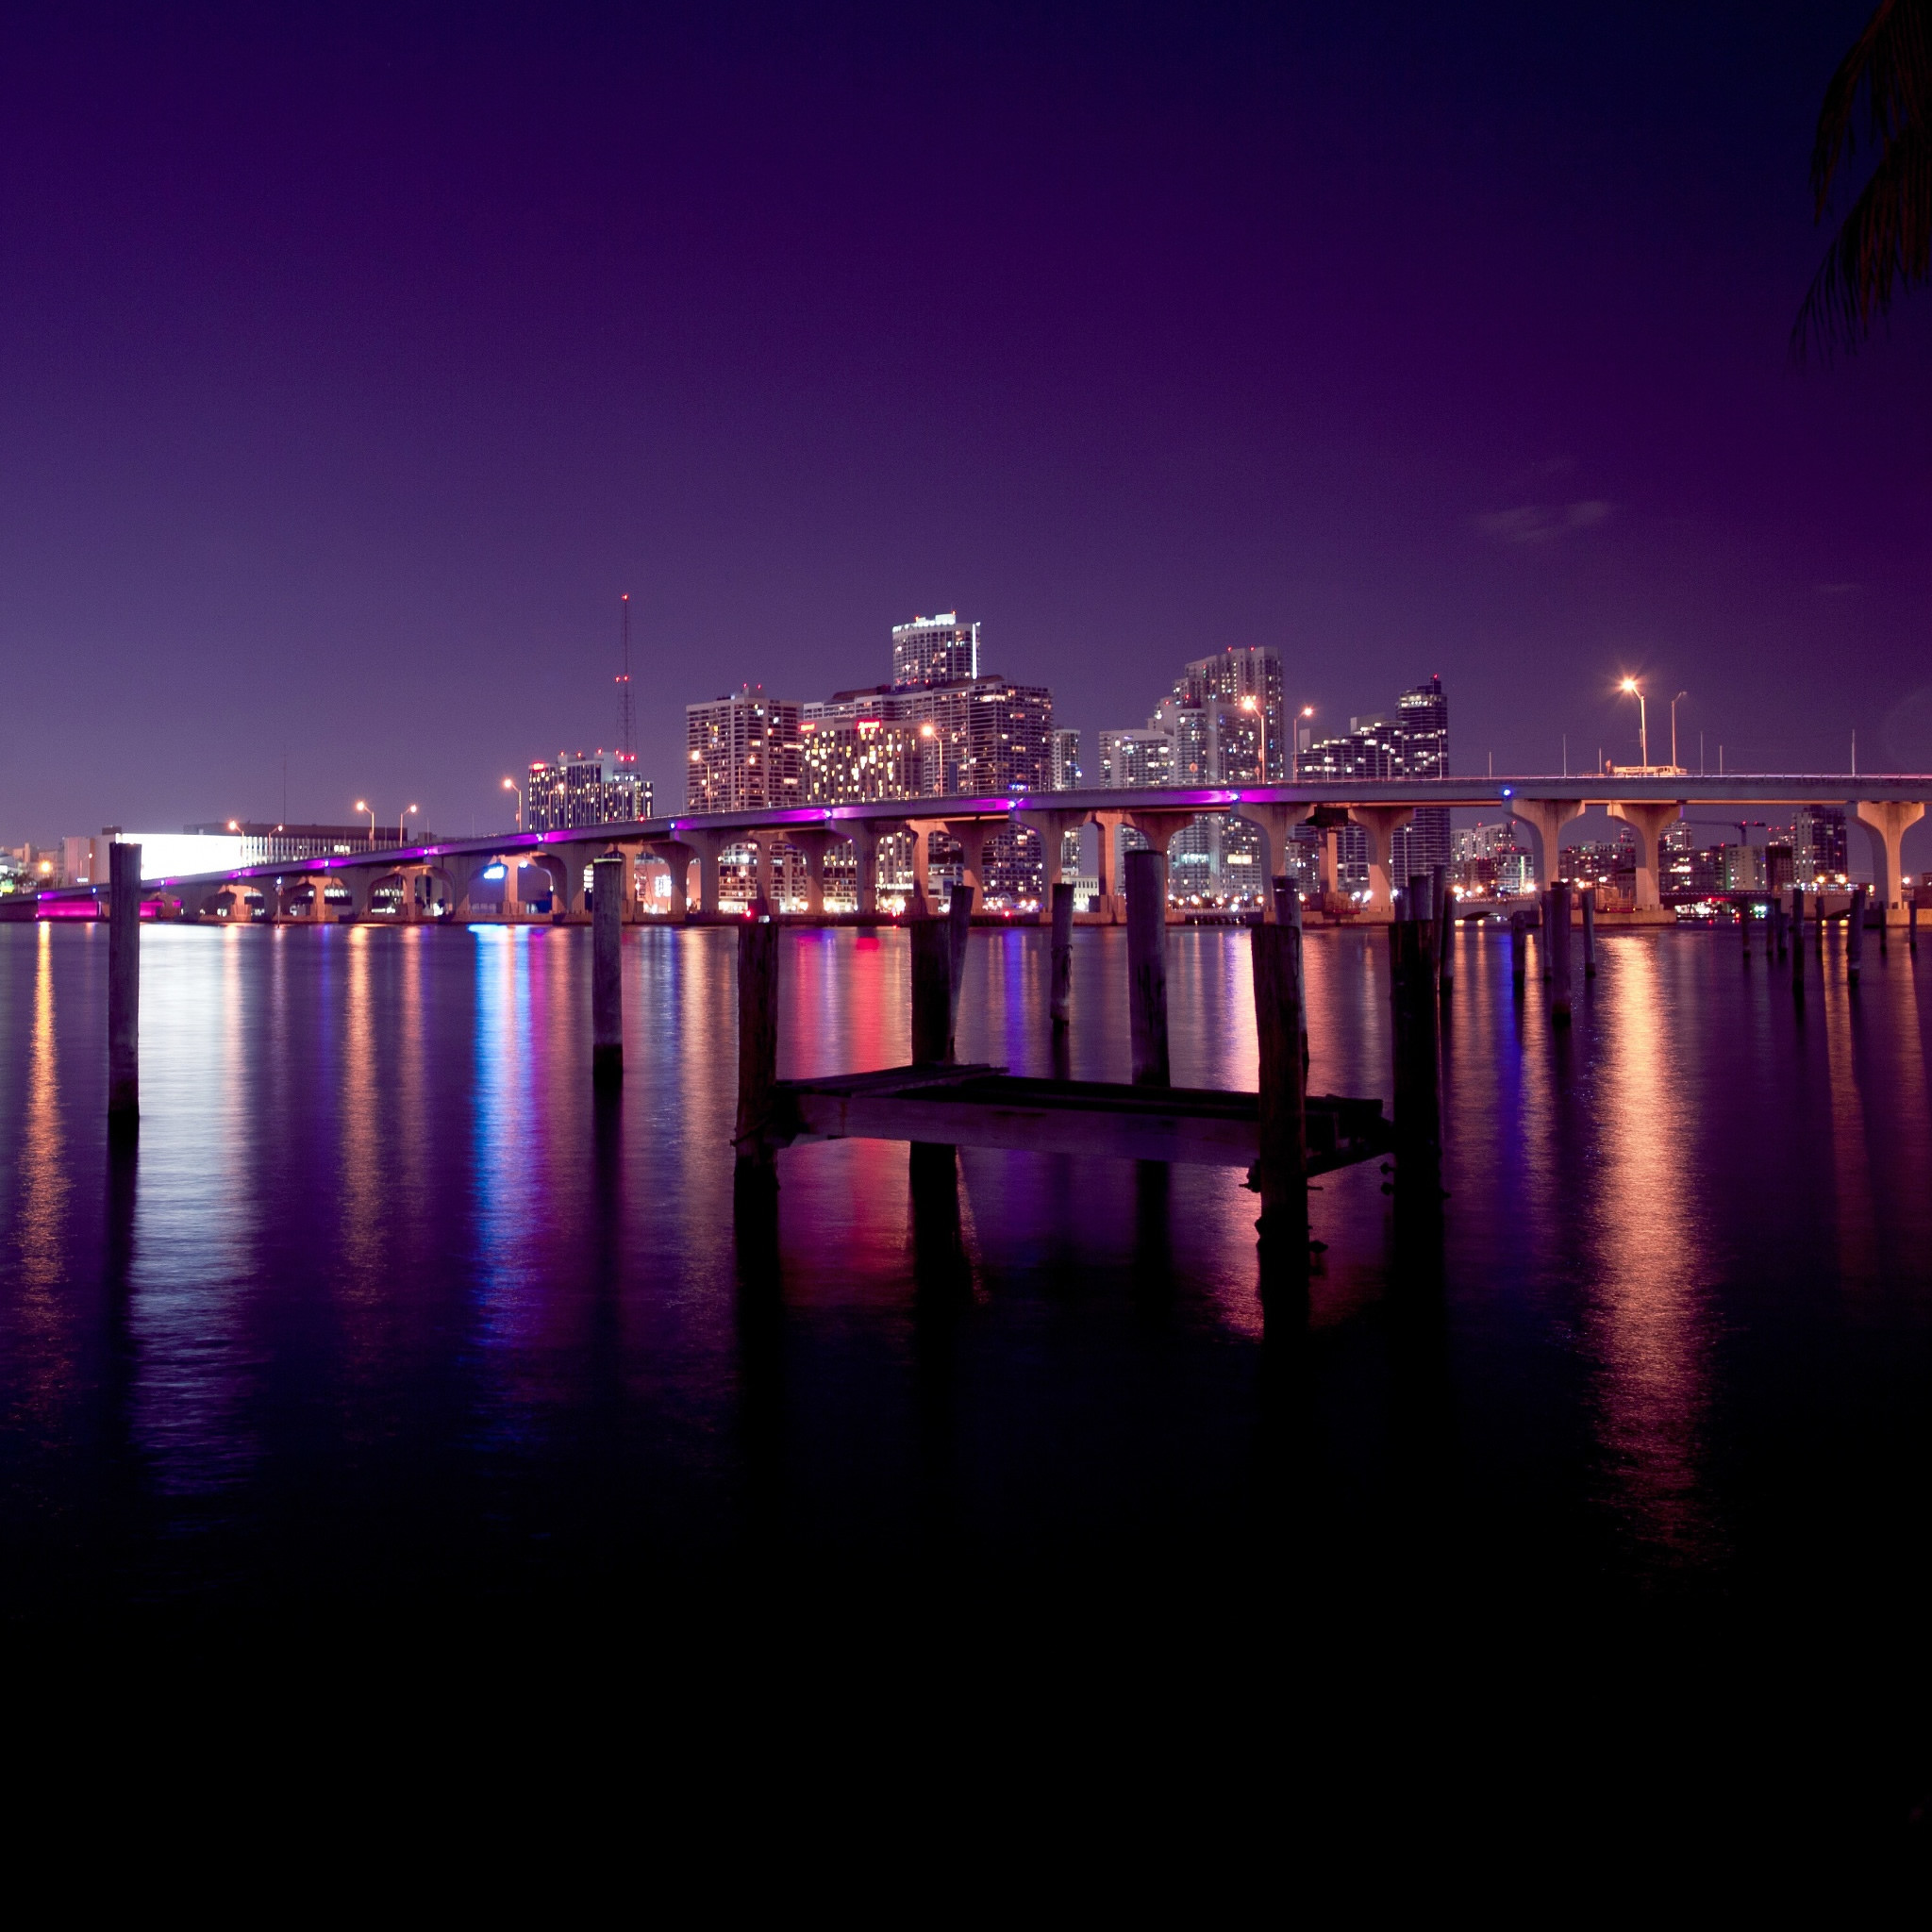 2048x2048 Hd Wallpapers Miami Skyline At Night 2560 X 1600 1539 Kb Jpeg | HD .